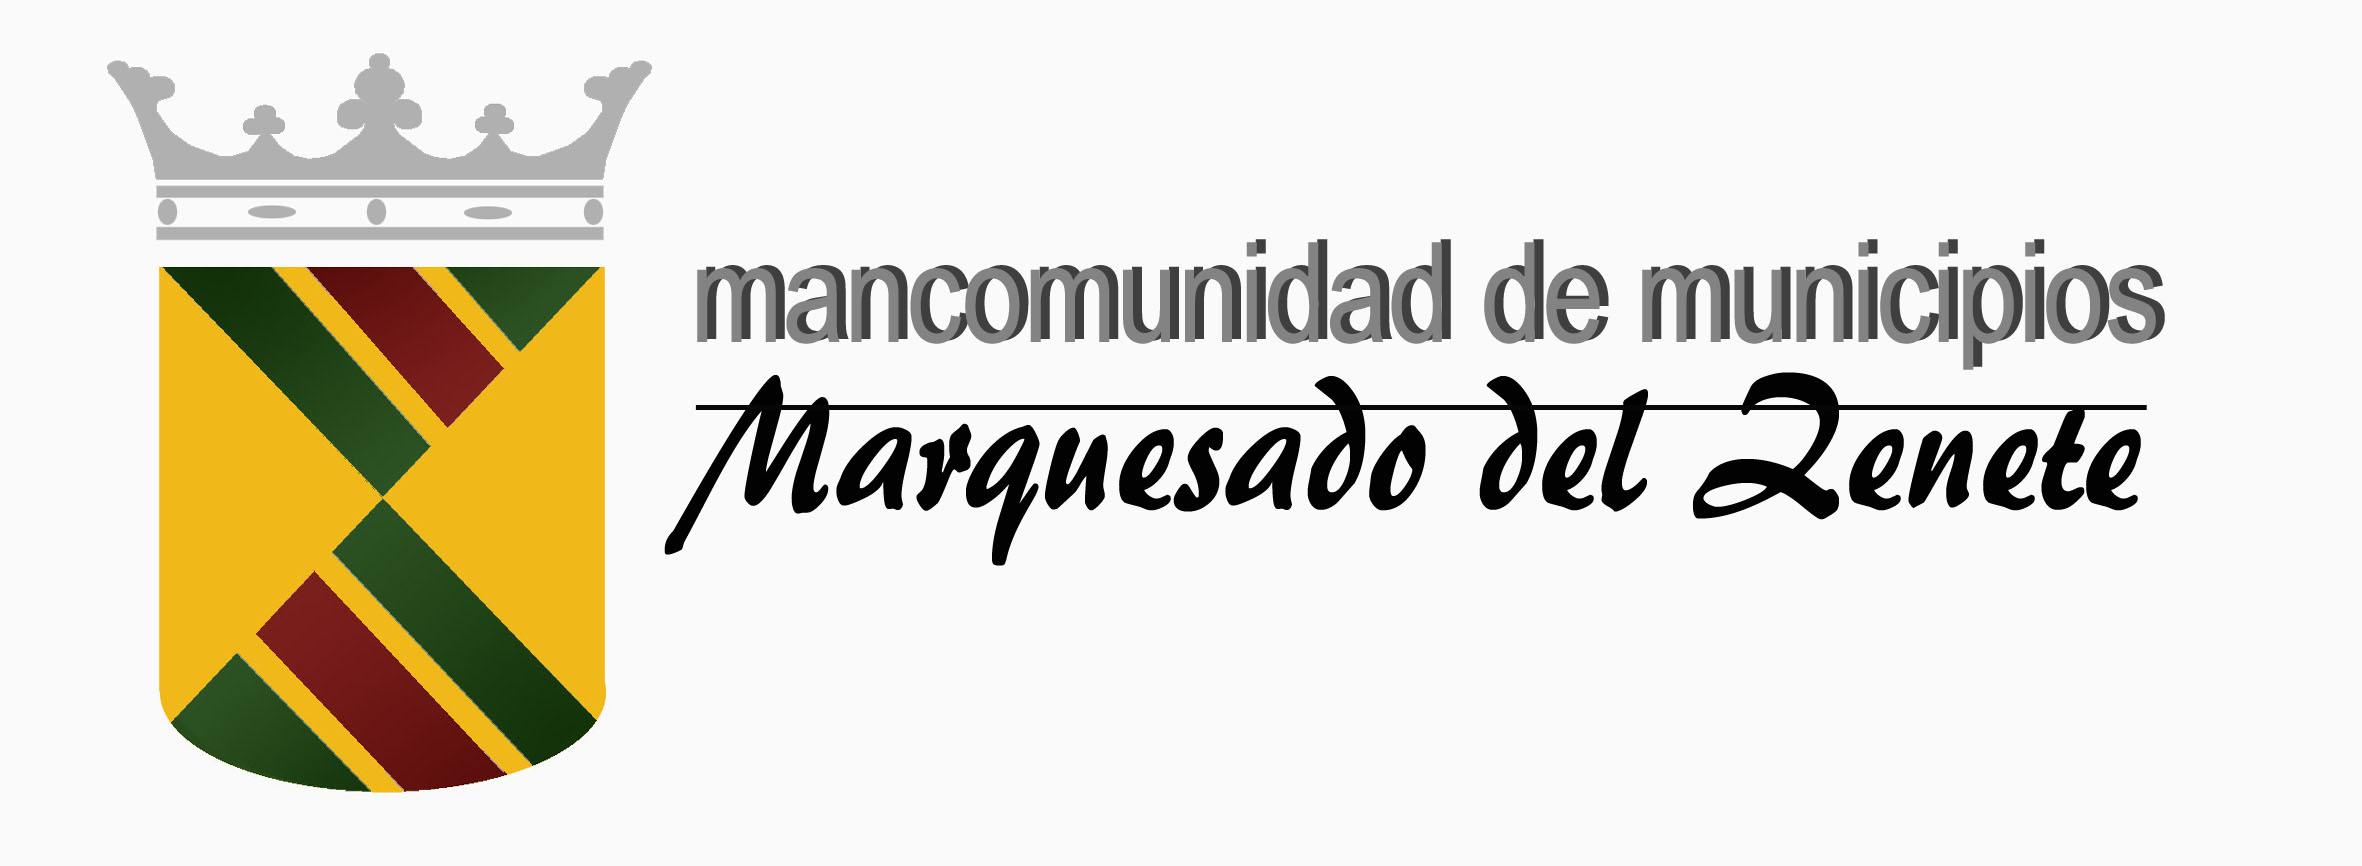 MANCOMUNIDAD MARQUESADO DEL ZENETE